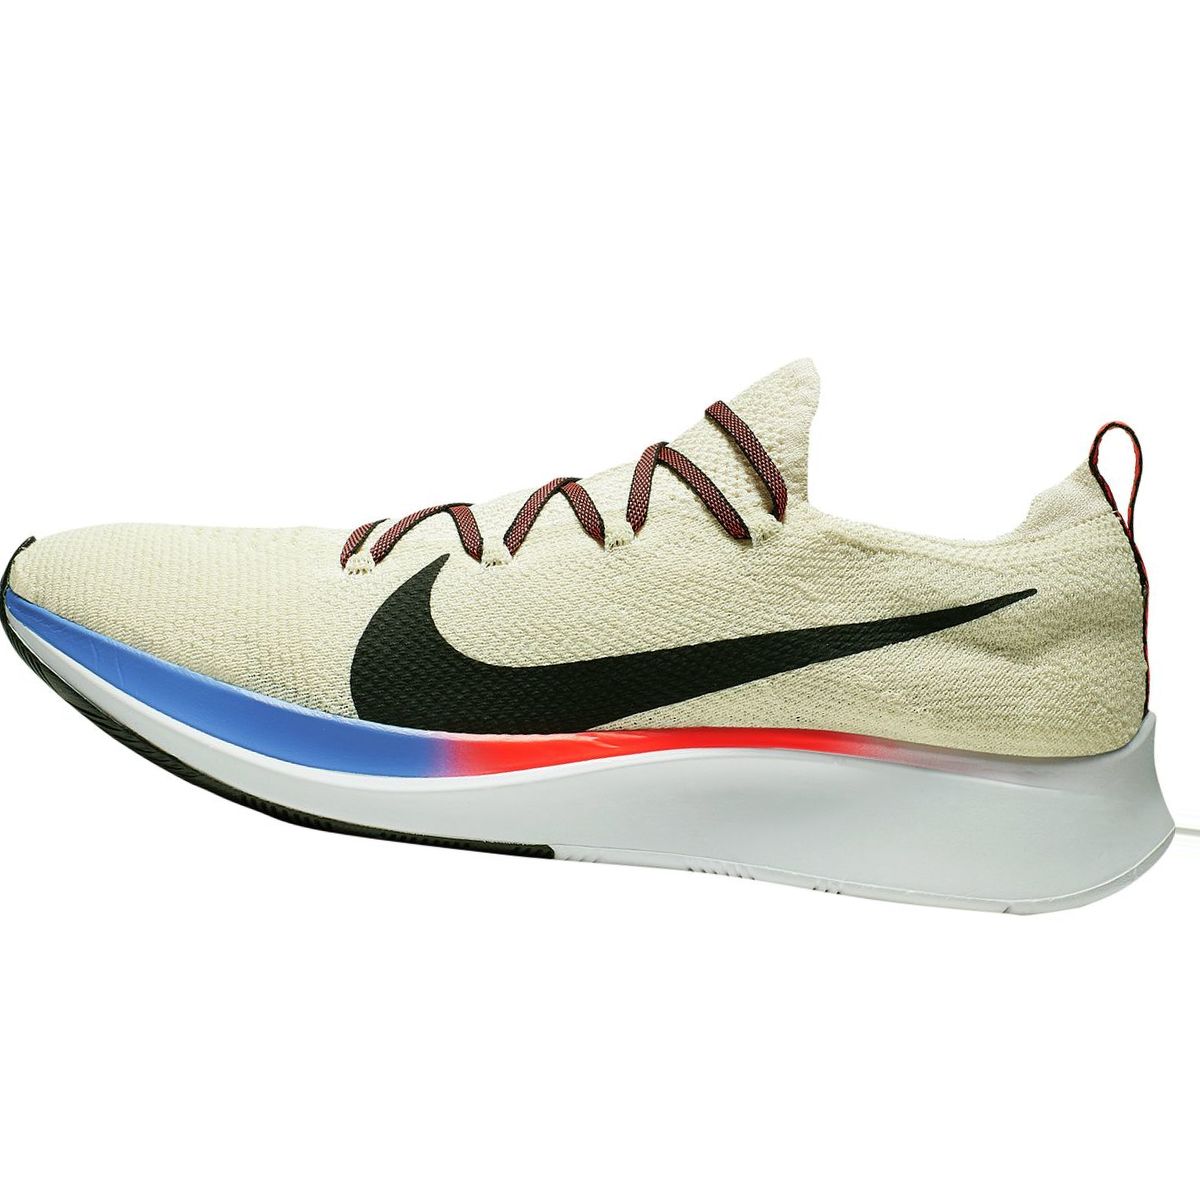 Nike Zoom Fly Flyknit Running Shoe - Men's